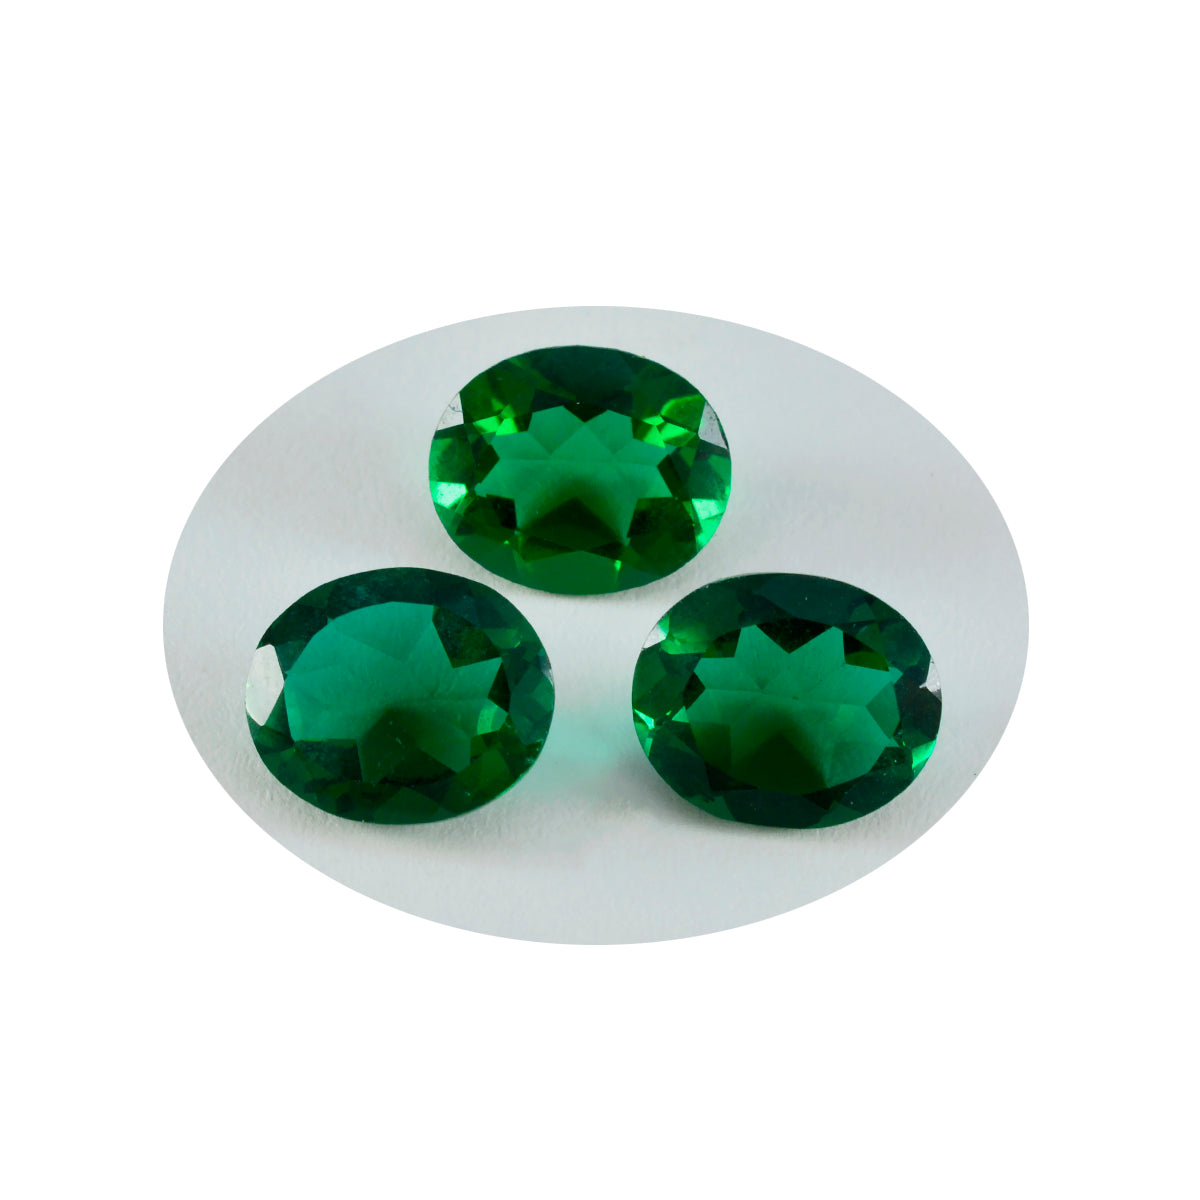 riyogems 1шт зеленый изумруд cz ограненный 10х12 мм драгоценный камень овальной формы отличное качество